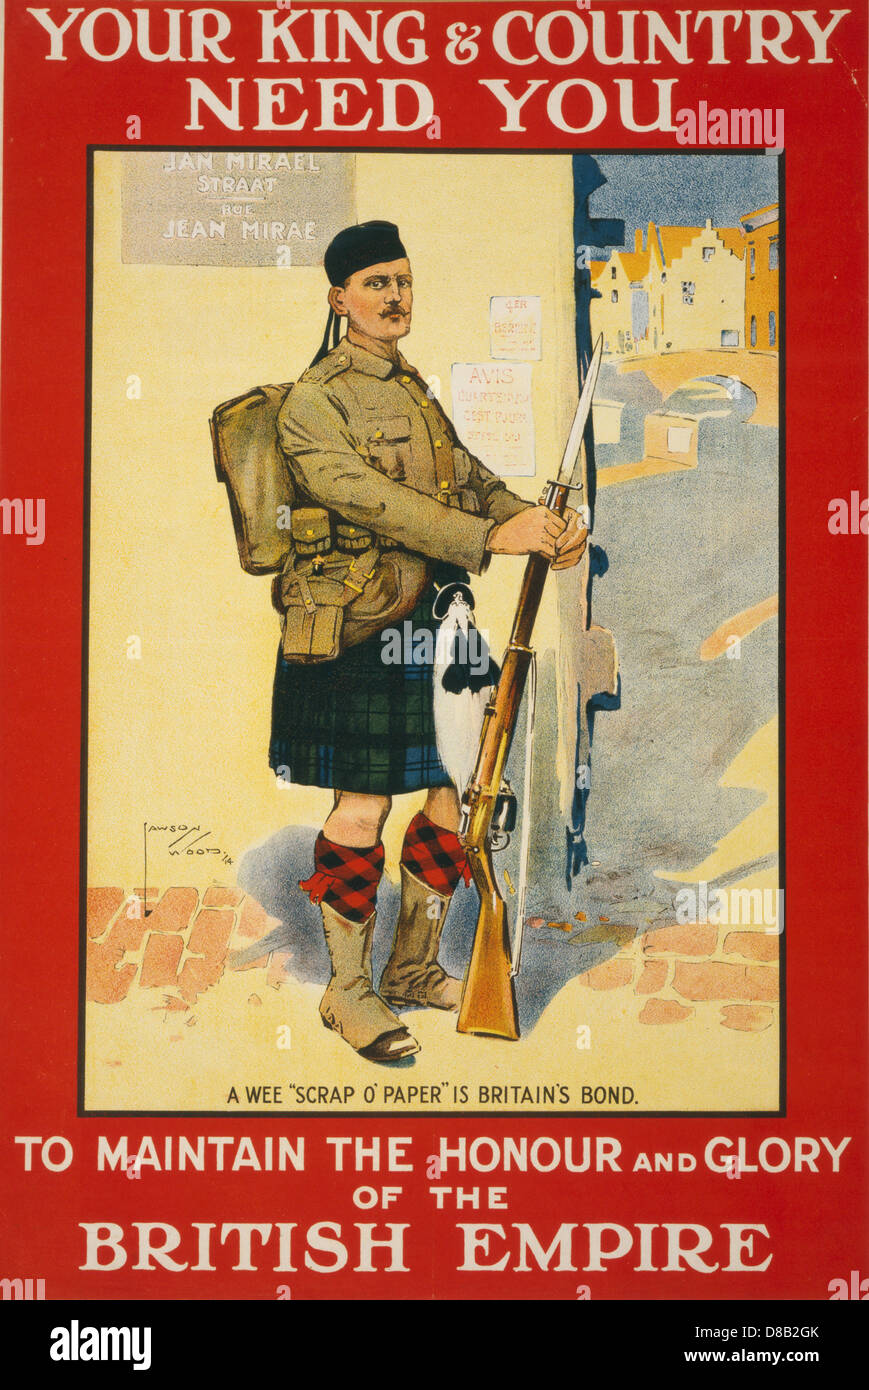 King & country votre besoin de vous pour maintenir l'honneur et la gloire de l'Empire britannique 1914 la propagande britannique s'enrôler Banque D'Images